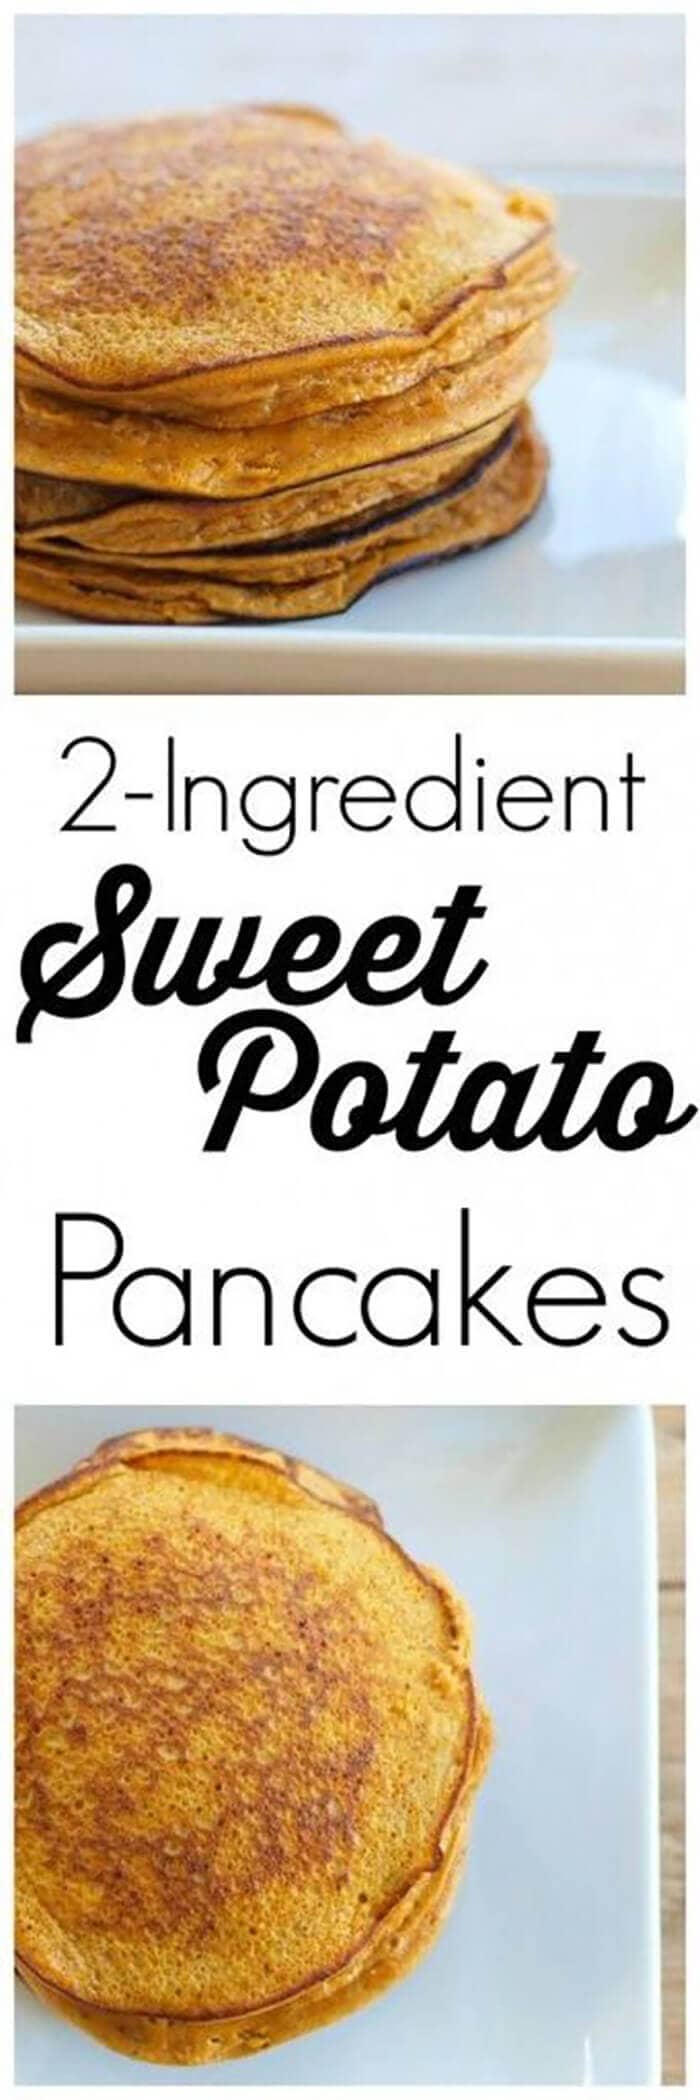 2-ingredient Sweet Potato Pancakes